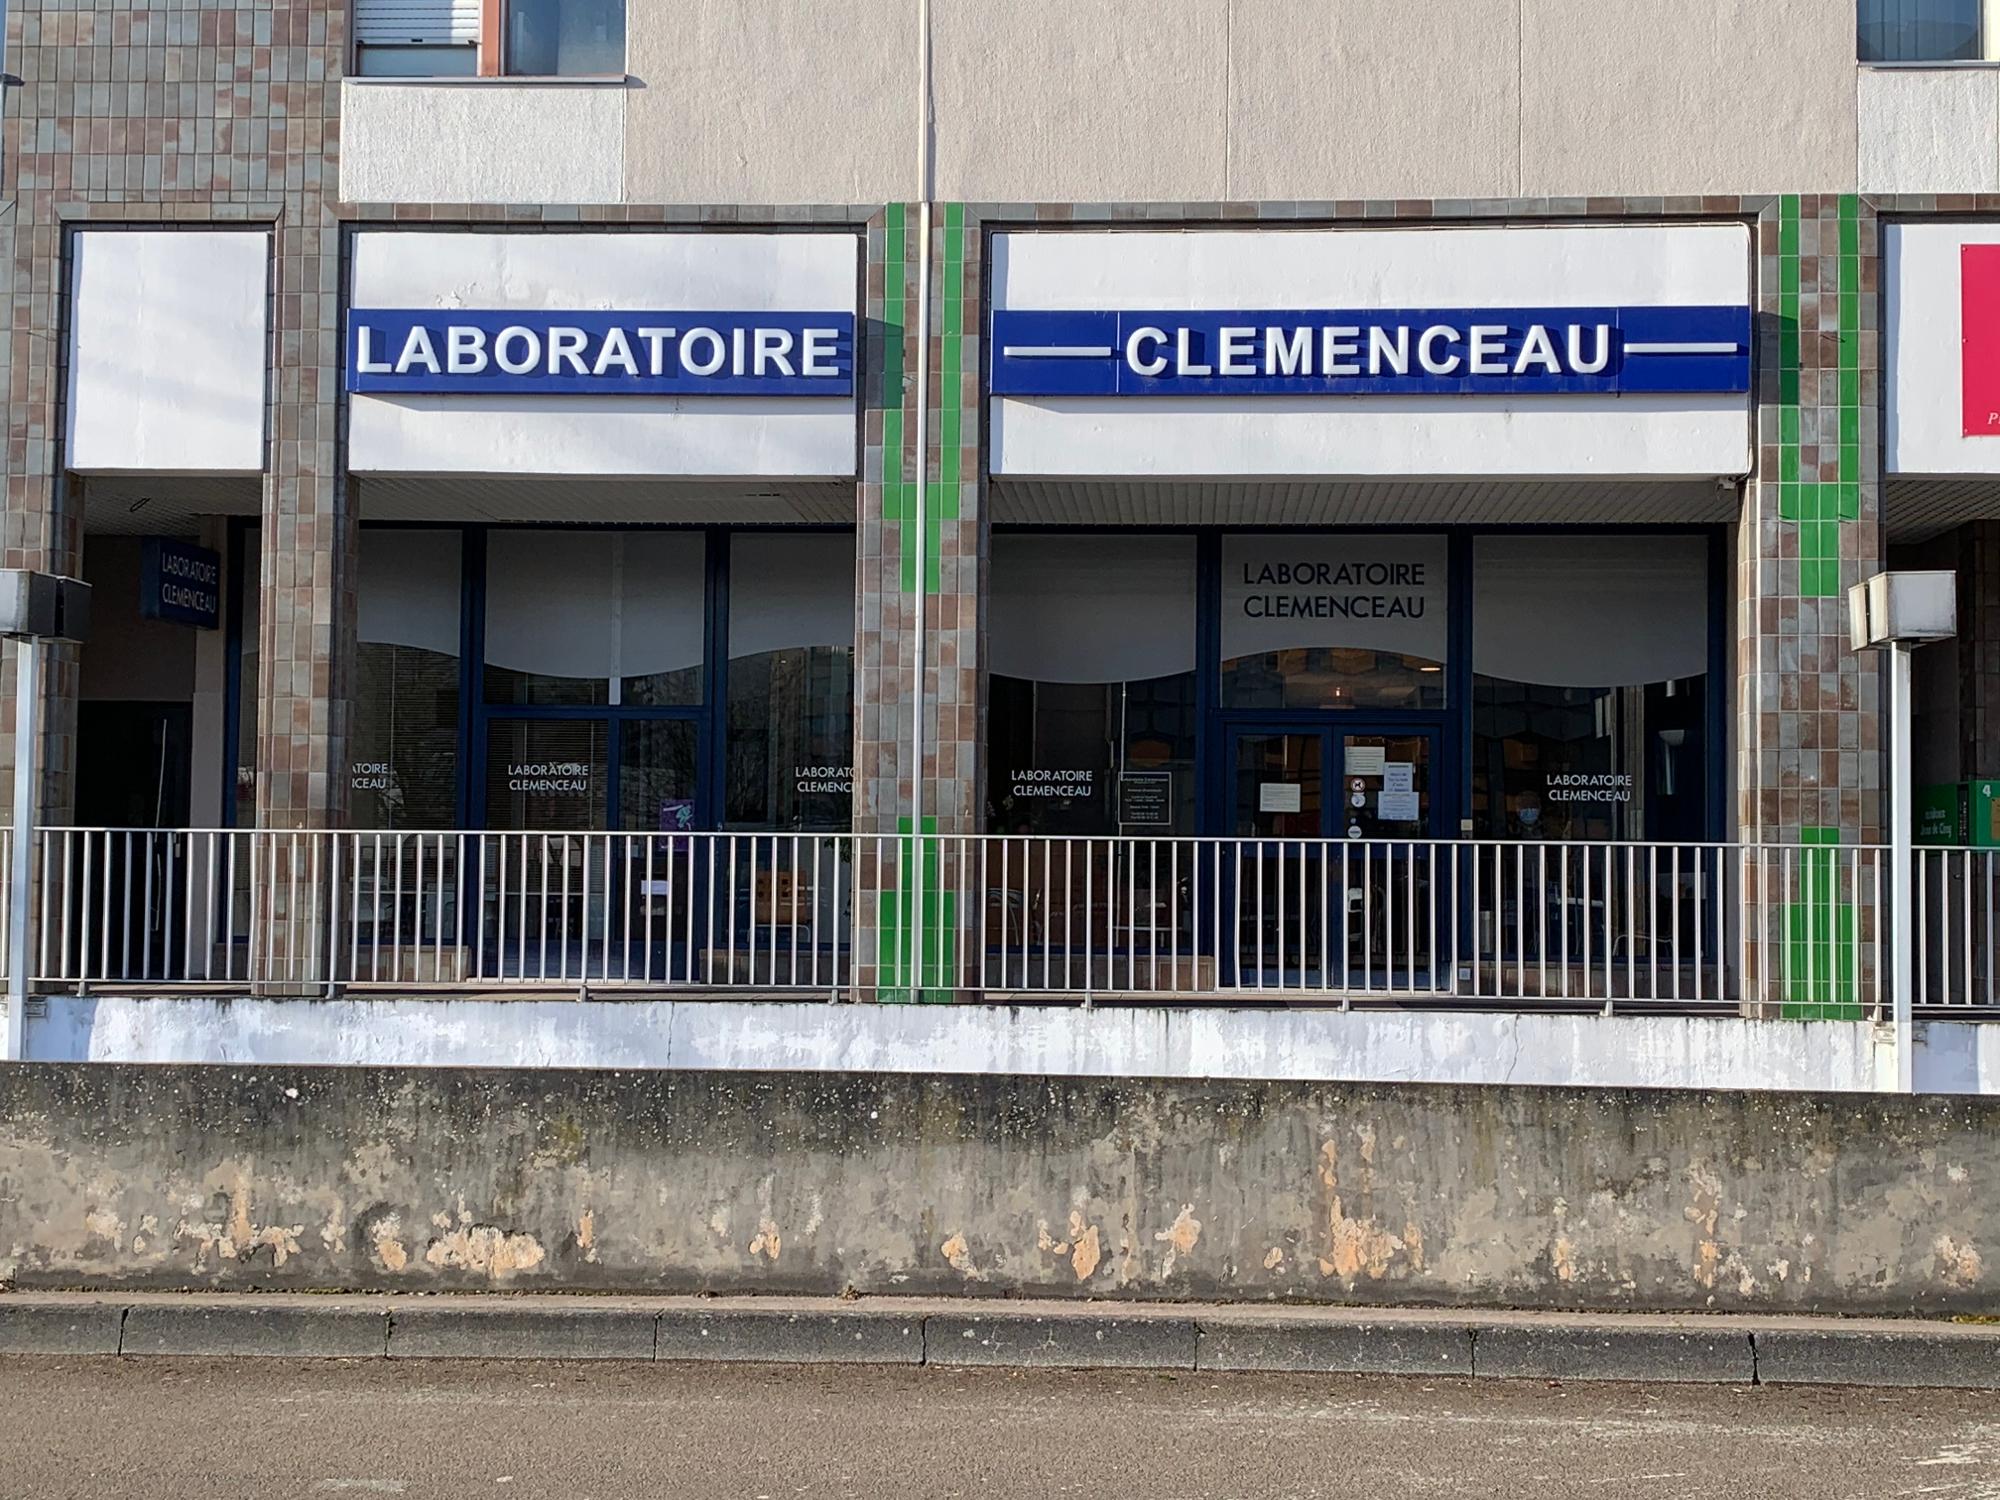 Images BIOGROUP - Laboratoire Clemenceau